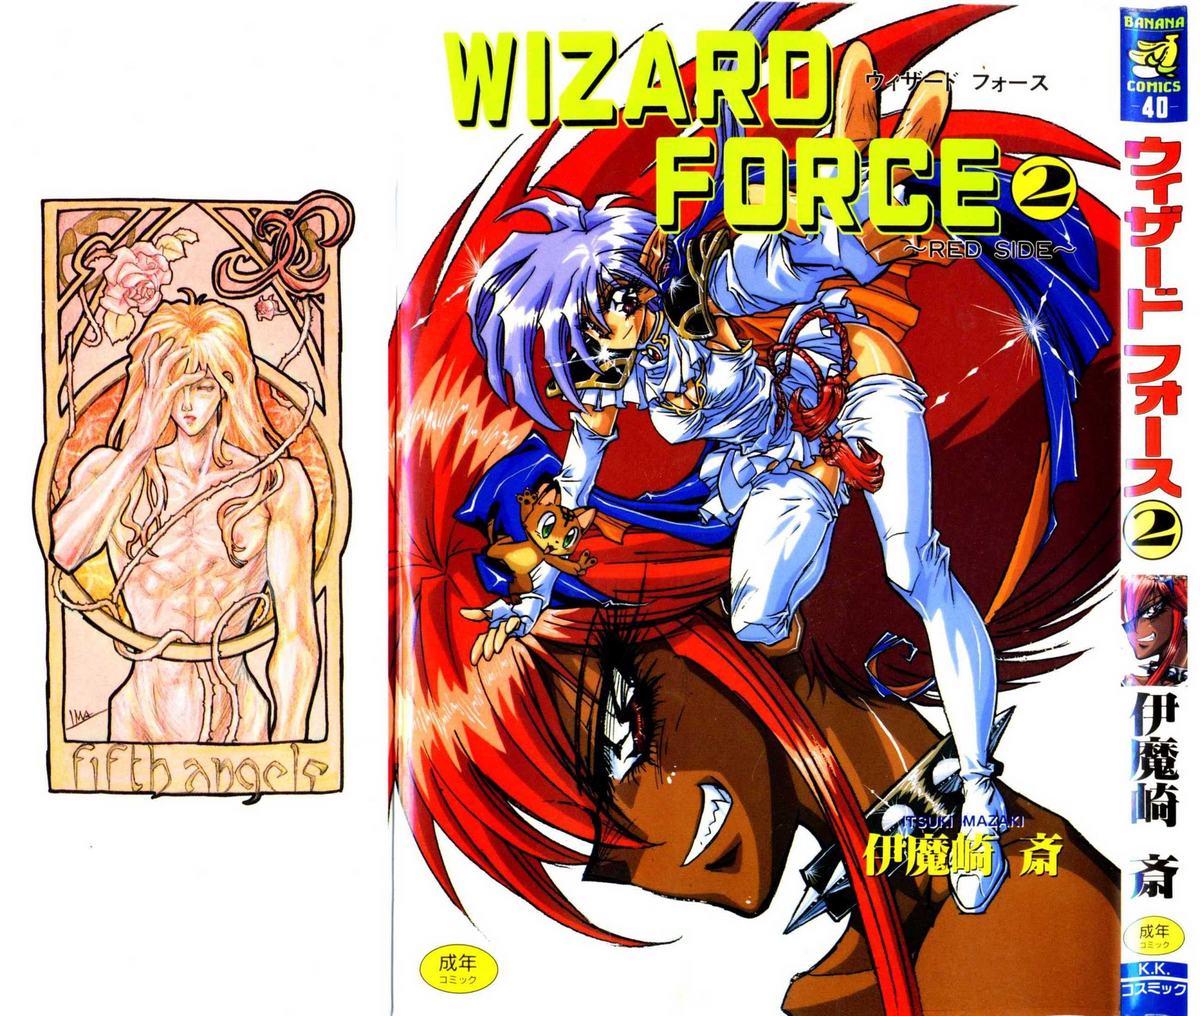 [Itsuki Imazaki] Wizard Force 02 ~Red Side~ 